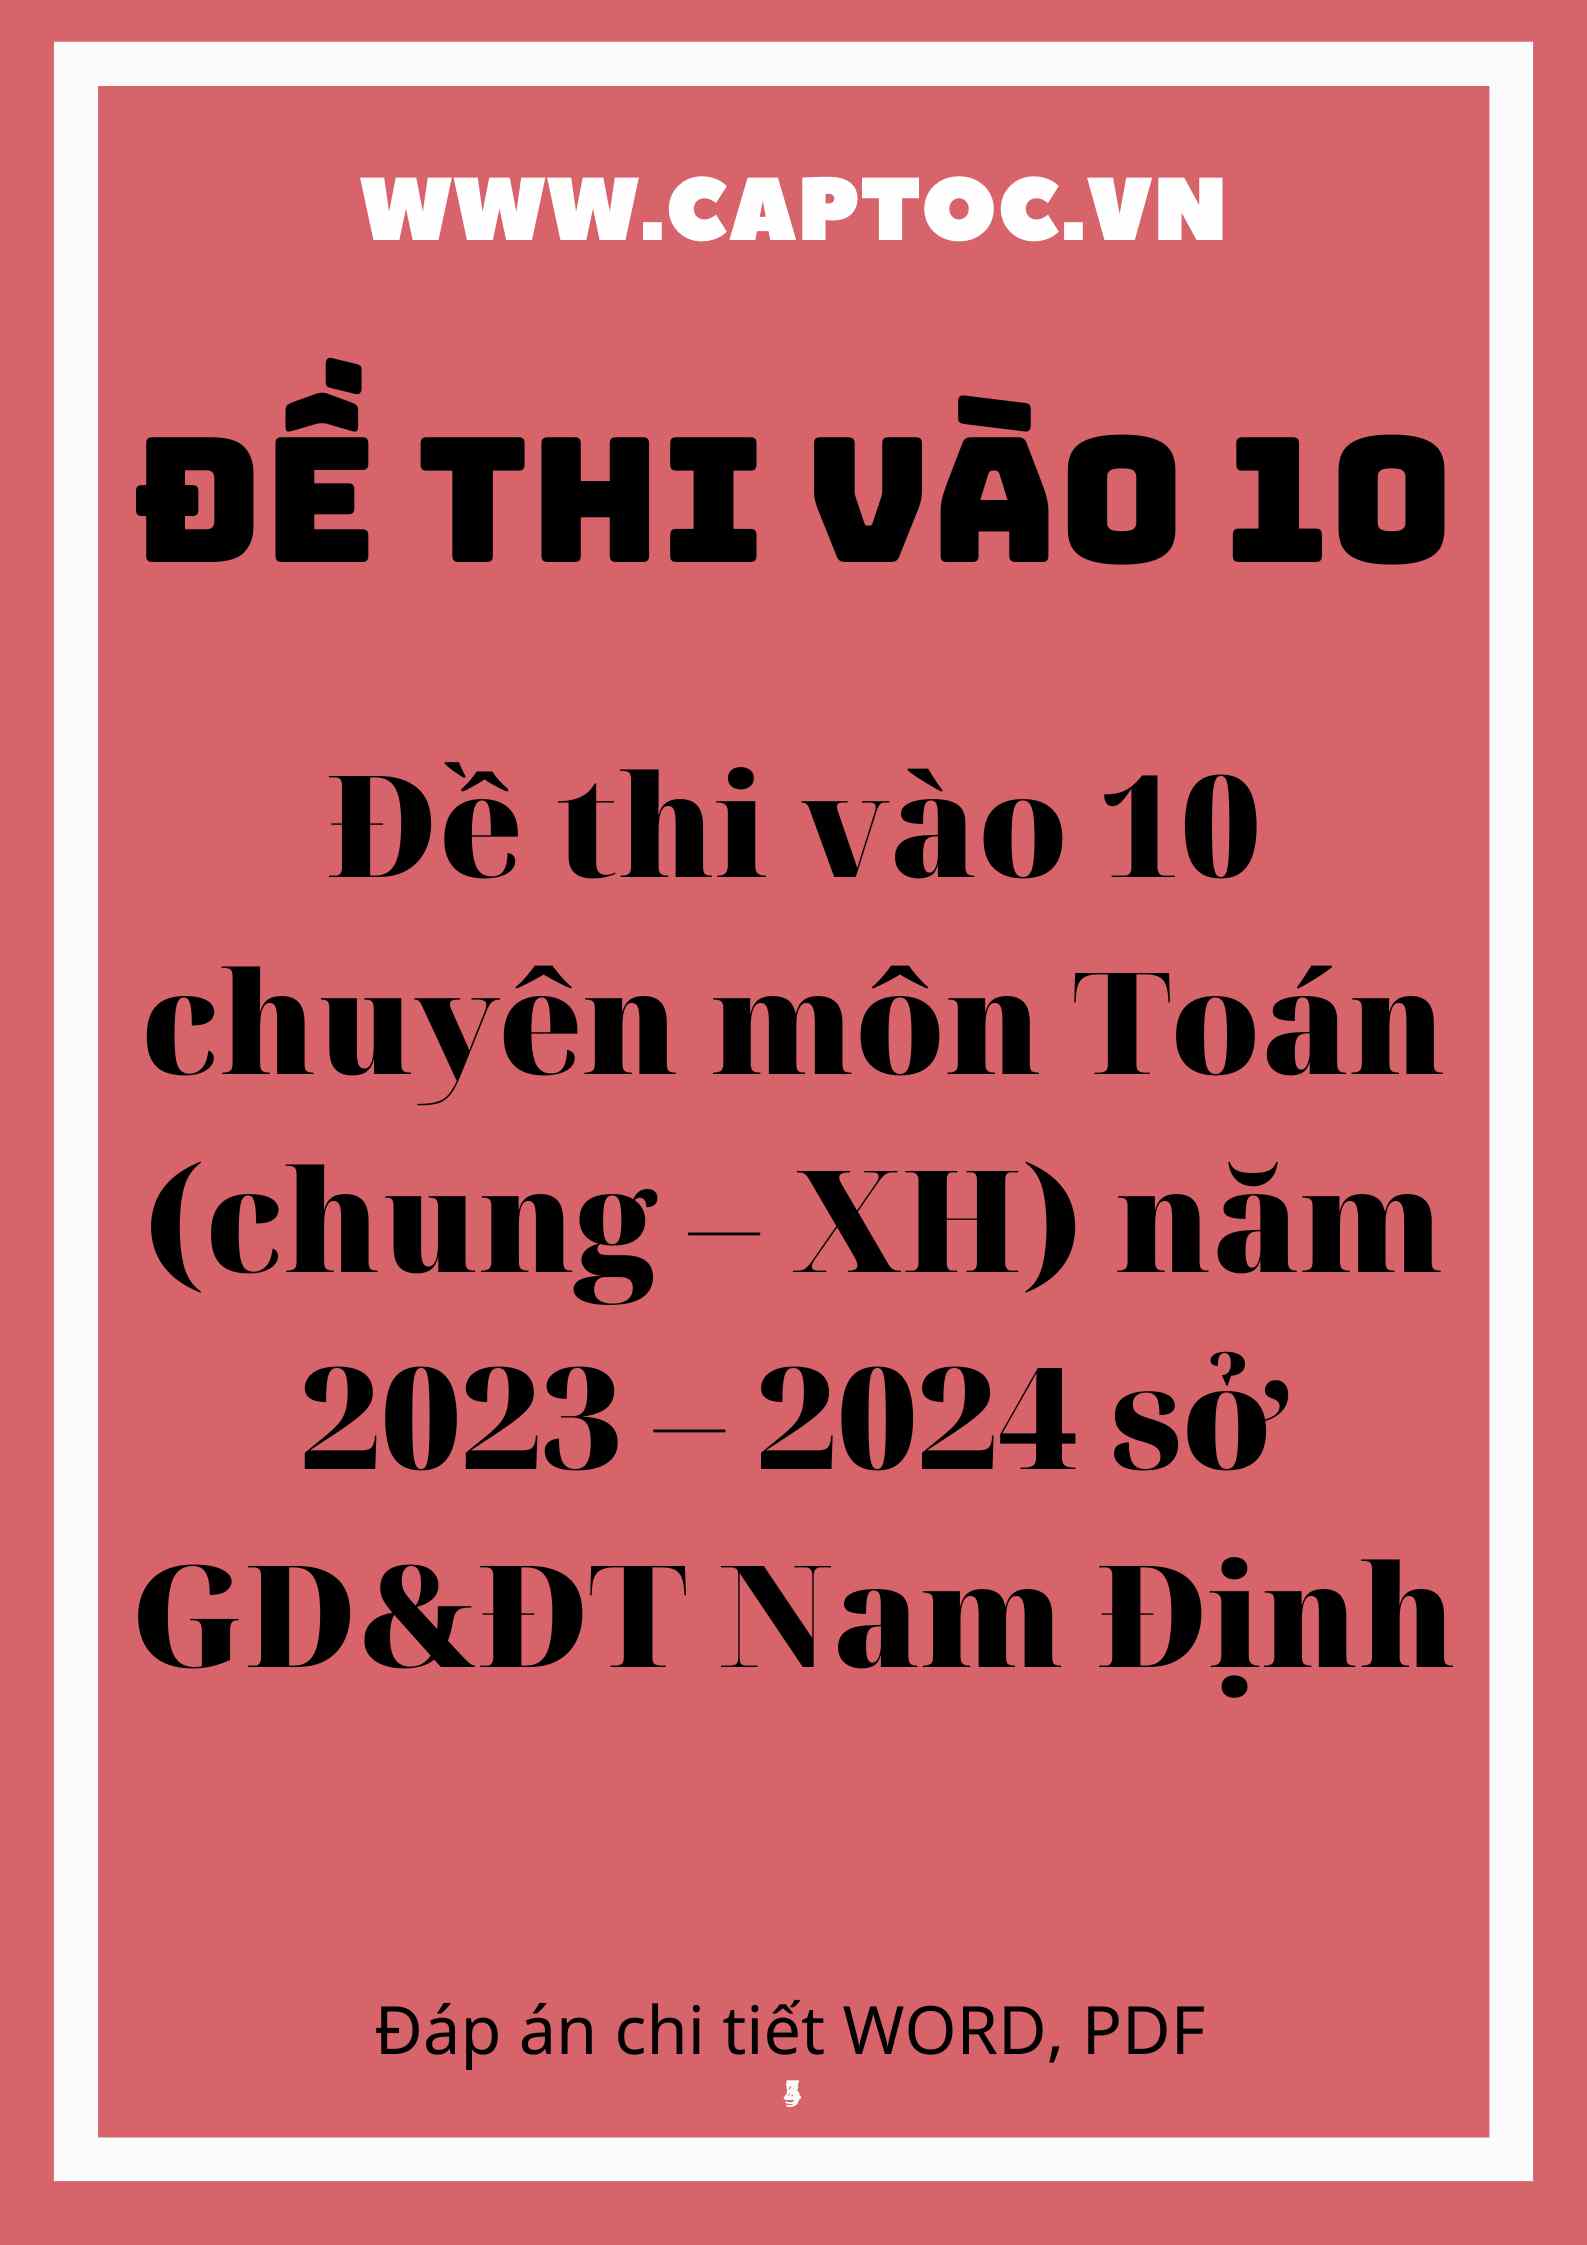 Đề thi vào 10 chuyên môn Toán (chung – XH) năm 2023 – 2024 sở GD&ĐT Nam Định